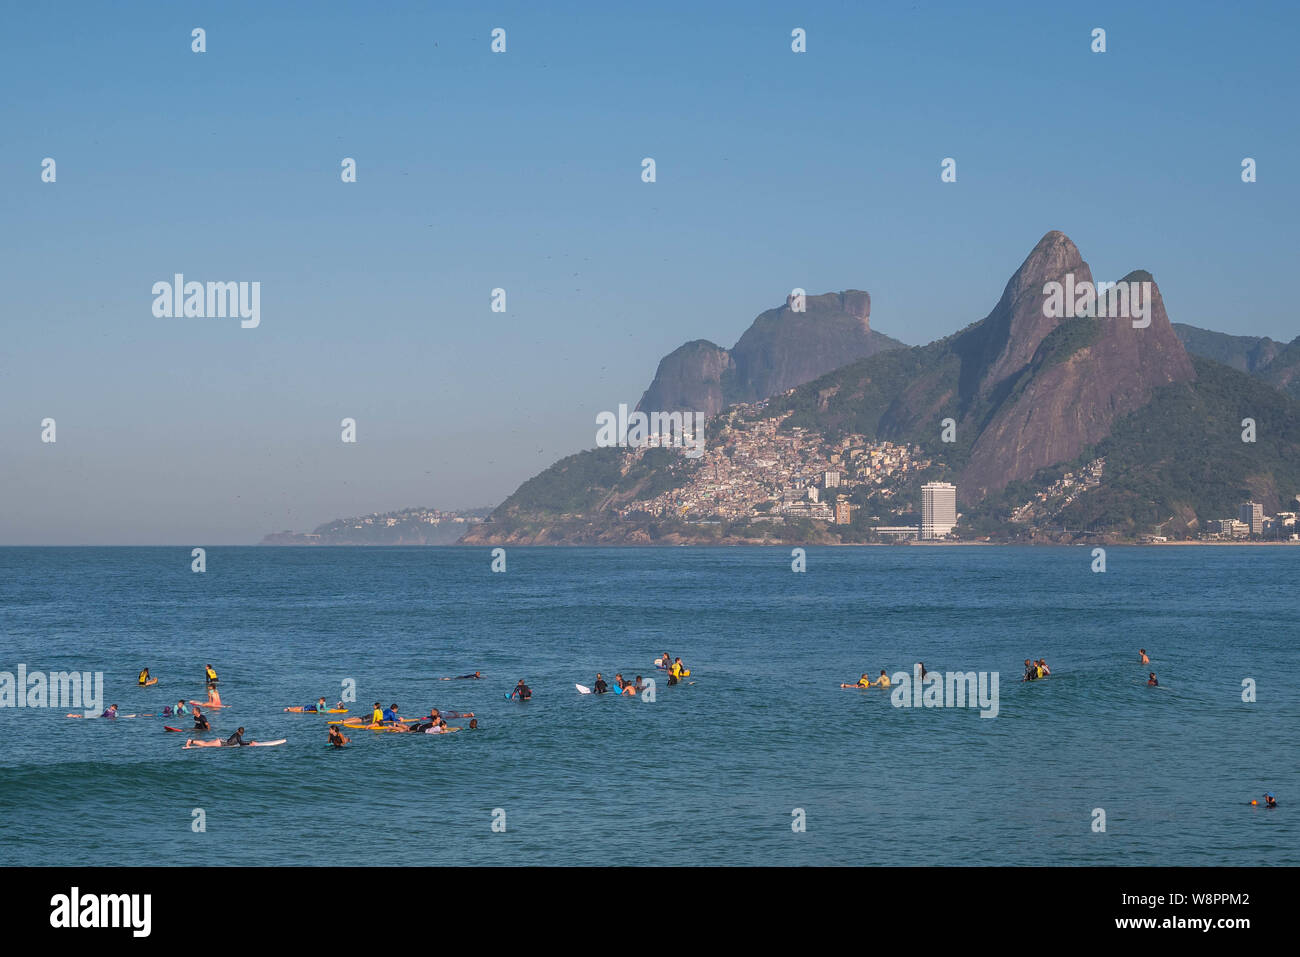 Rio de Janeiro, Brasile - 10 agosto 2019: Arpoador e la spiaggia di Ipanema con amatoriale surfisti in attesa delle onde sulle acque blu e le montagne come backgr Foto Stock